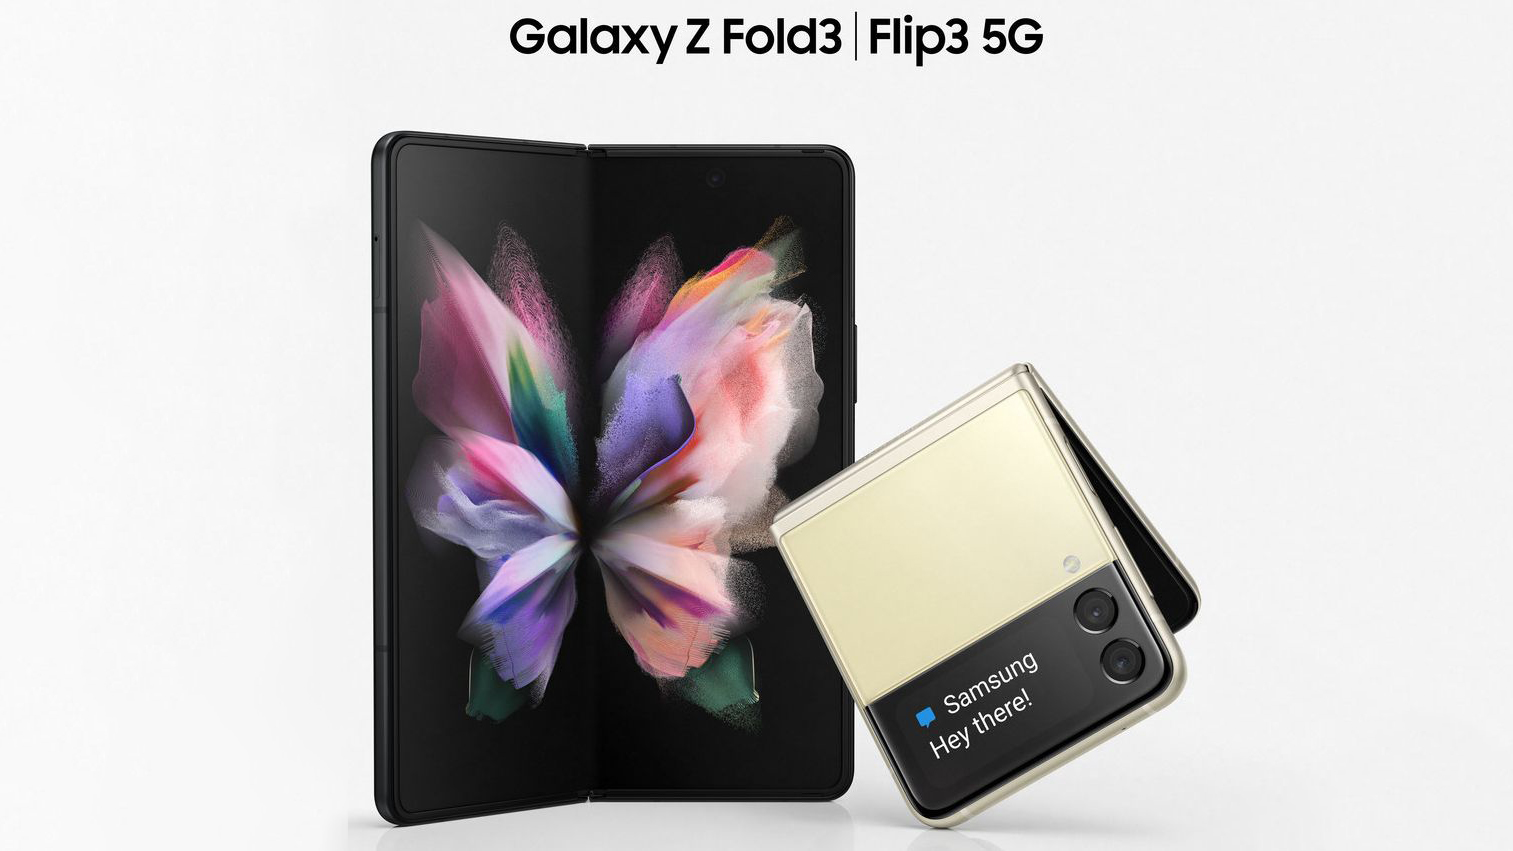 Mời bạn tải bộ ảnh nền Galaxy Z Fold 3 và Galaxy Z Flip 3